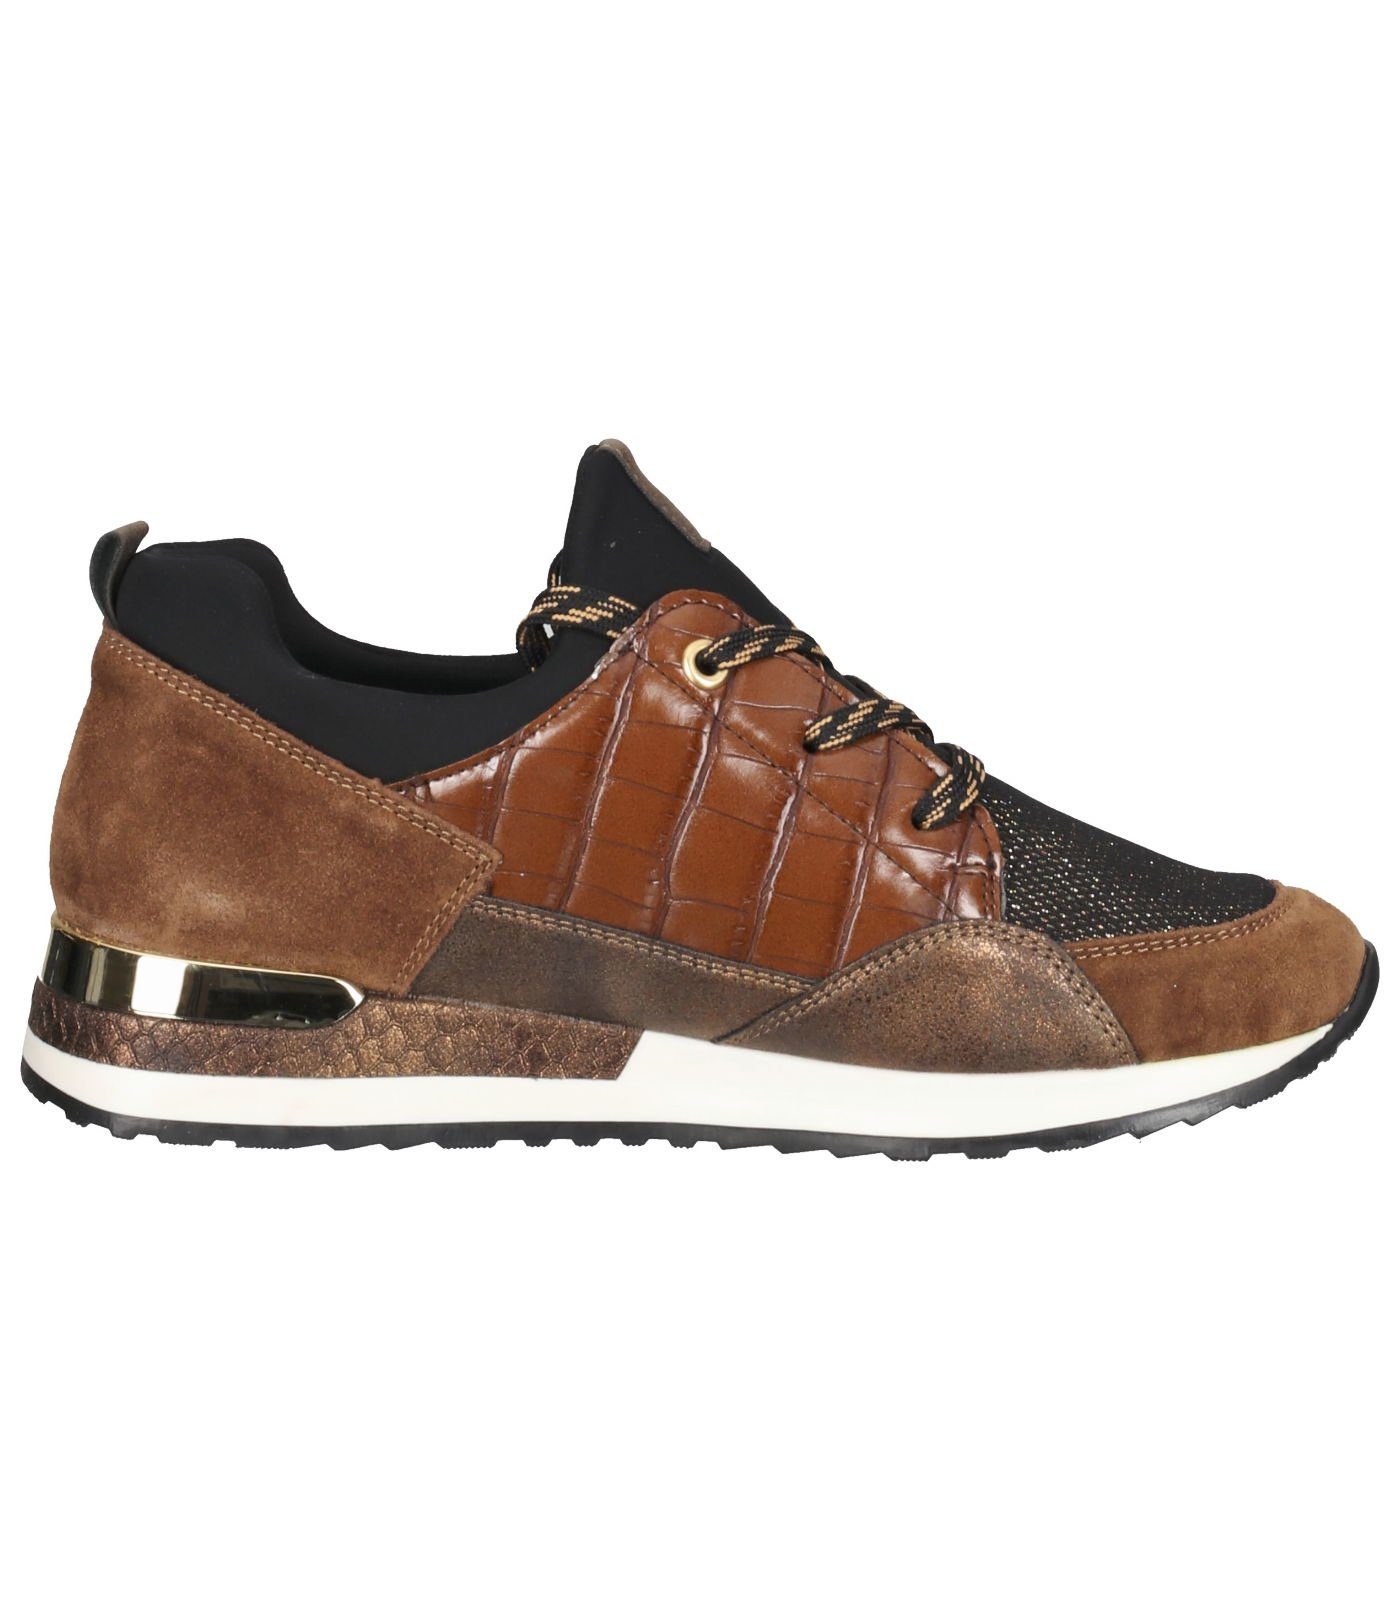 amaretto/schwarz-bronze/antik/mogano/schwarz Sneaker / Sneaker 25 Remonte Lederimitat